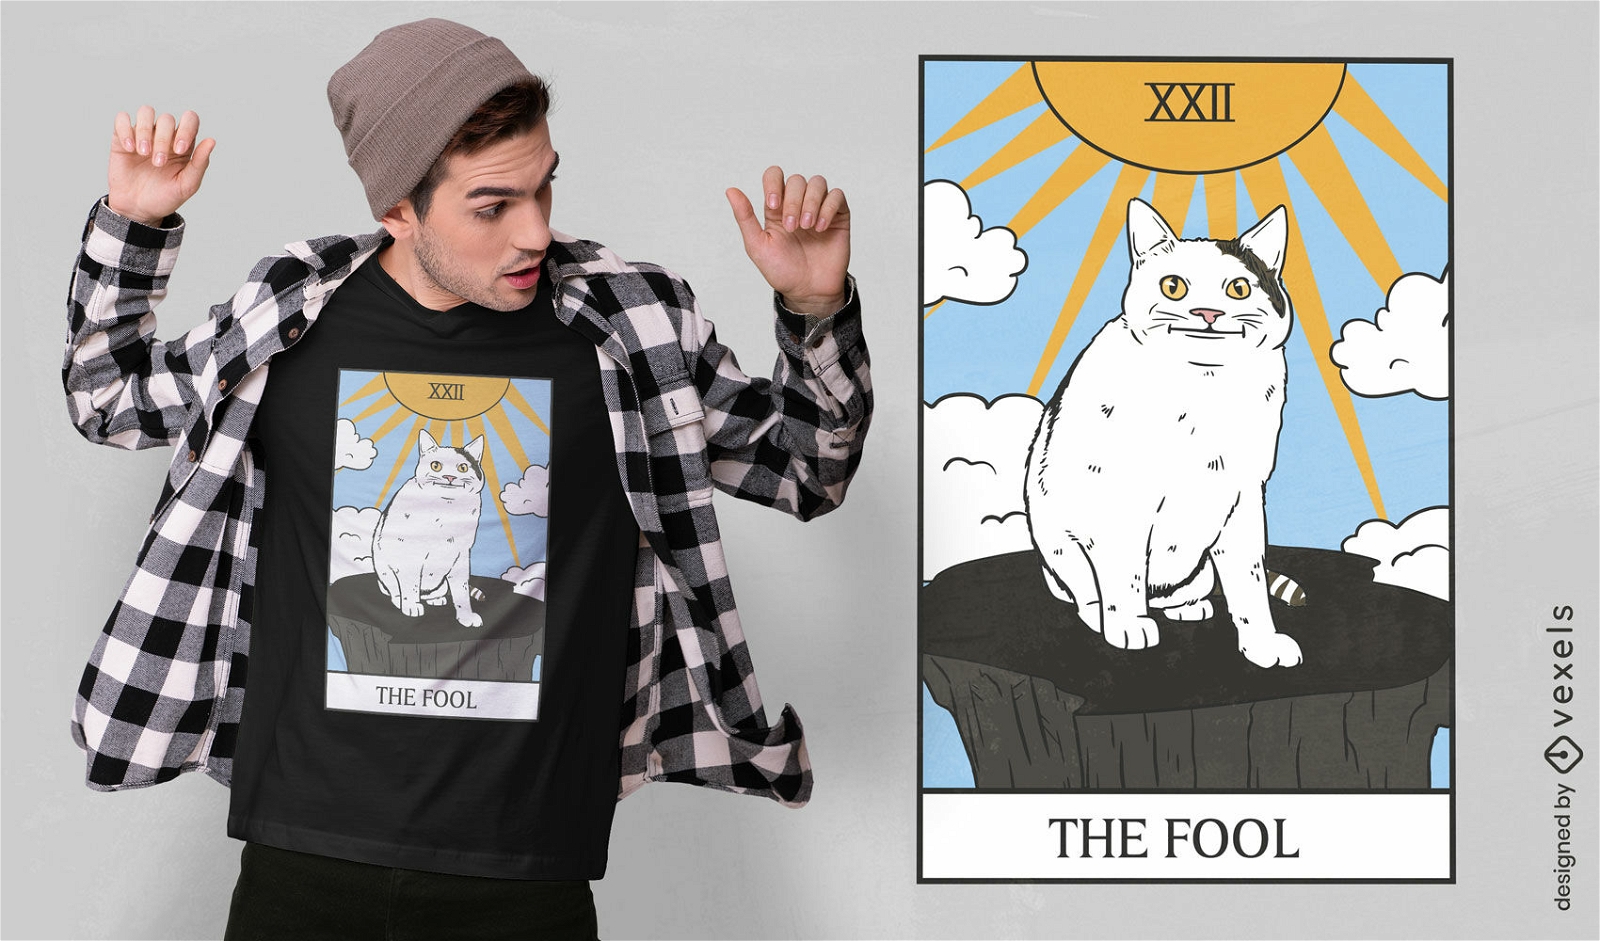 Katzen-Tarot-Karten-Meme-T-Shirt-Design